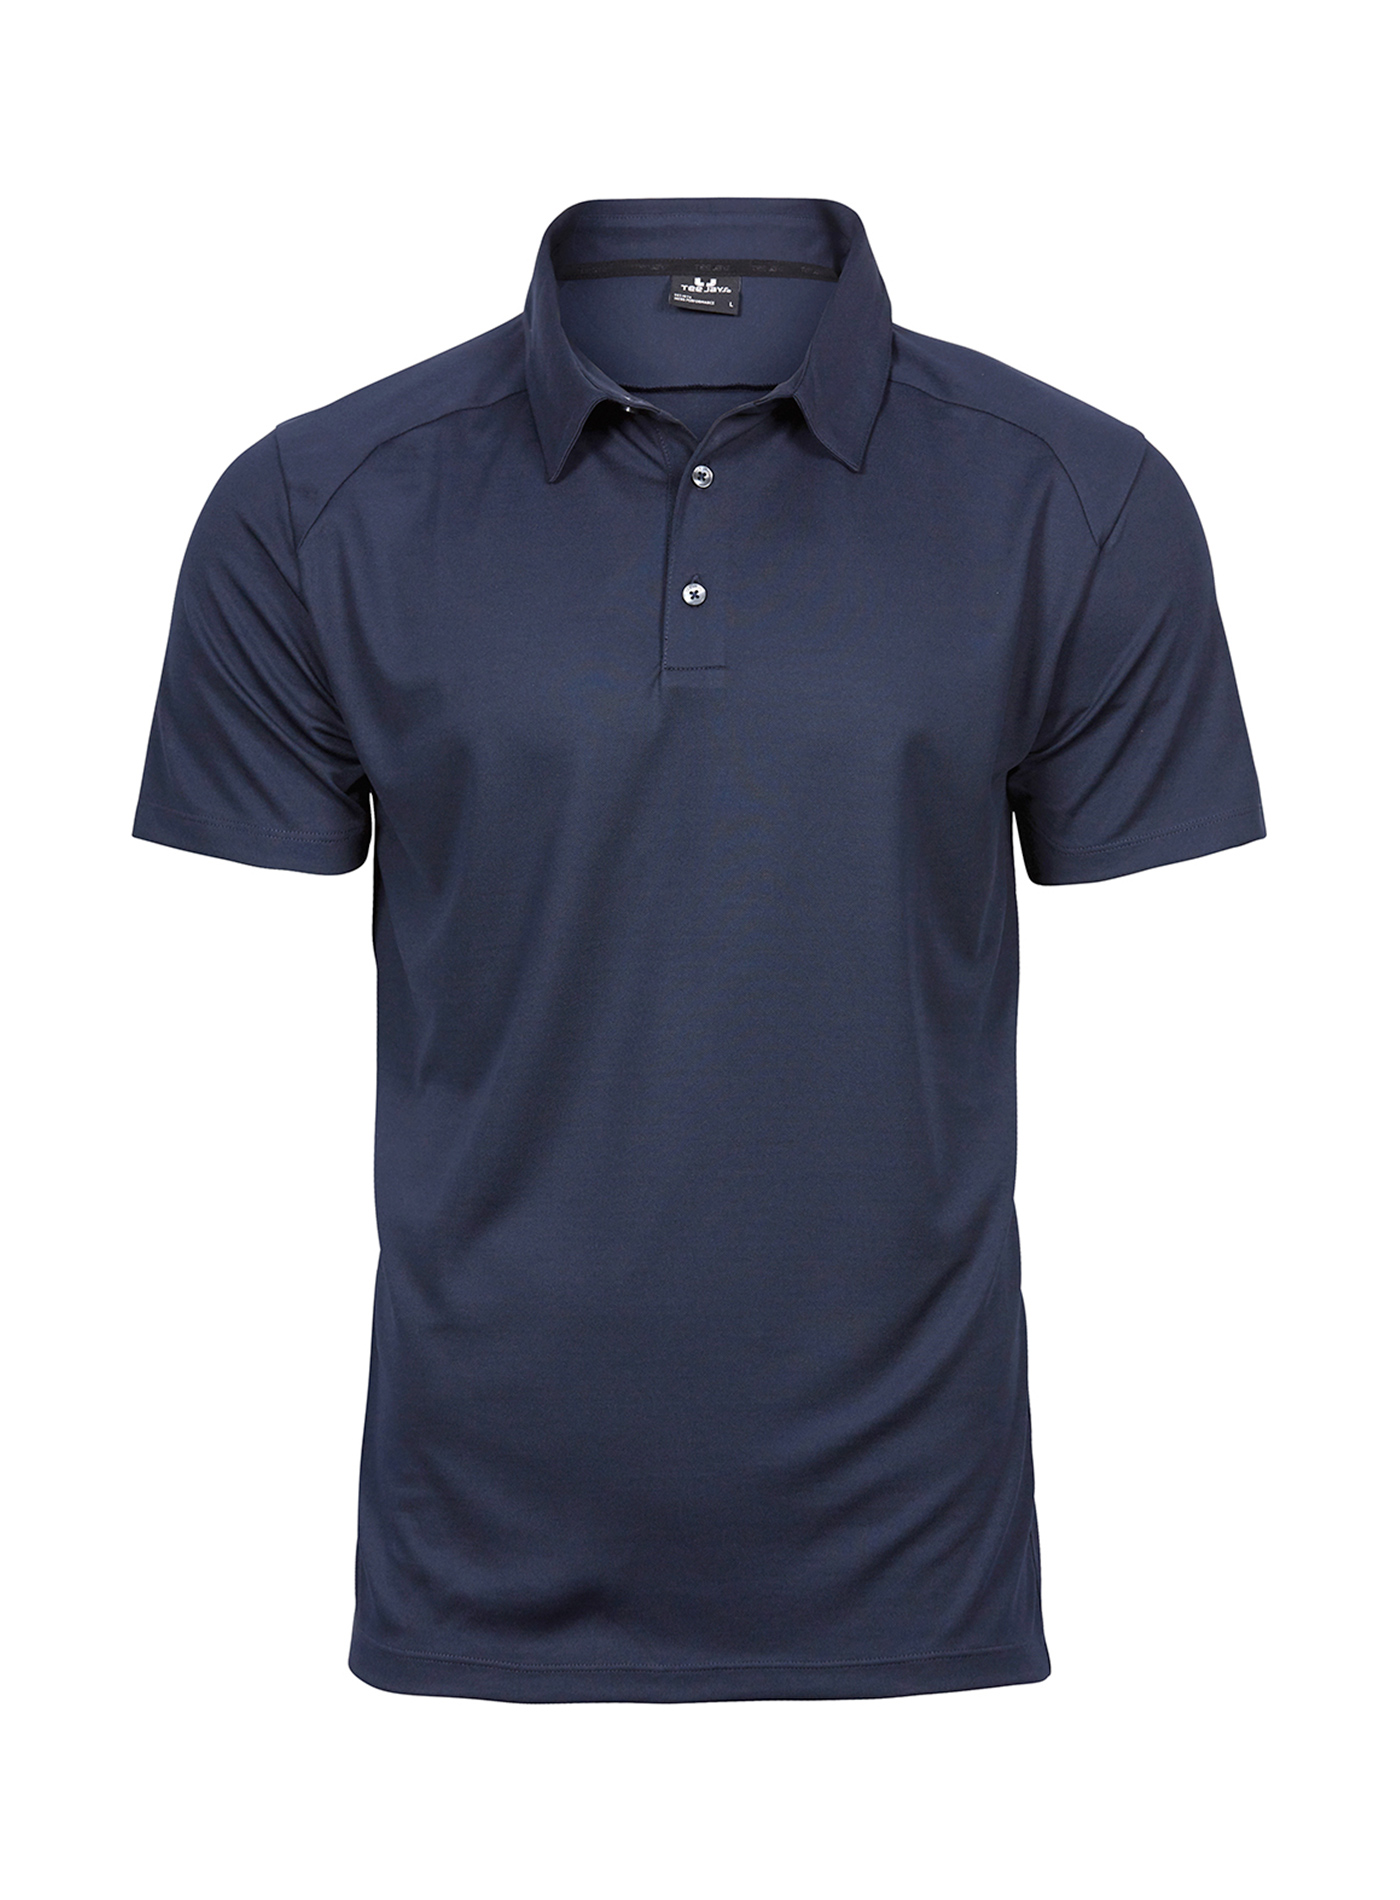 Pánská sportovní polokošile Tee Jays - Cobalt blue/Navy L